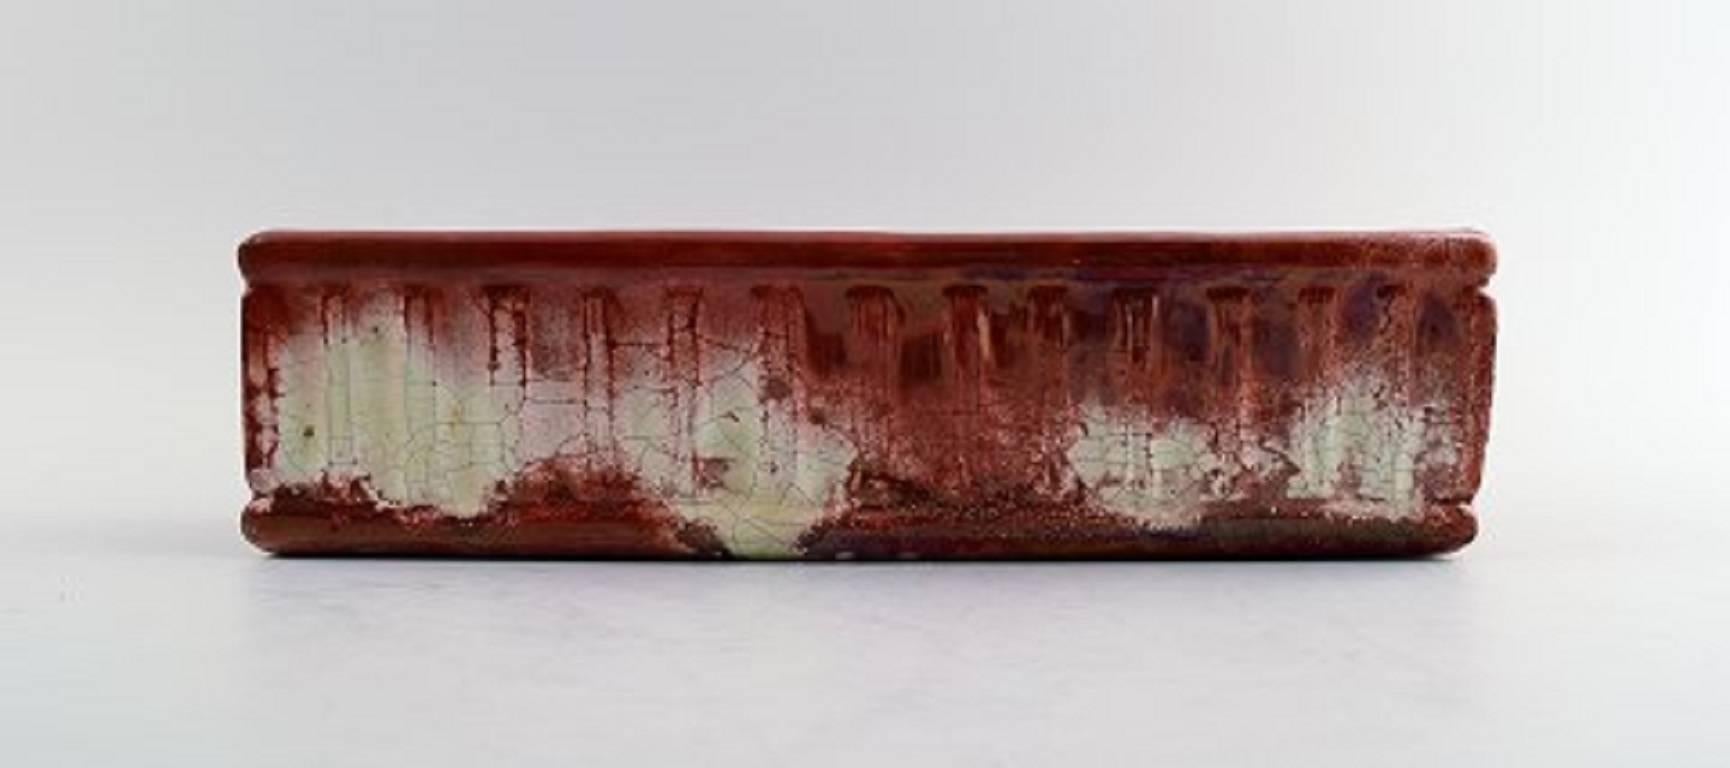 Kähler, Dänemark, Blumentopfhalter / Jardiniere aus glasiertem Steingut in roter Glanzglasur.

Ungefähr 1910er Jahre.

In perfektem Zustand.

Markiert.

Maße: 29 x 7,5 cm.